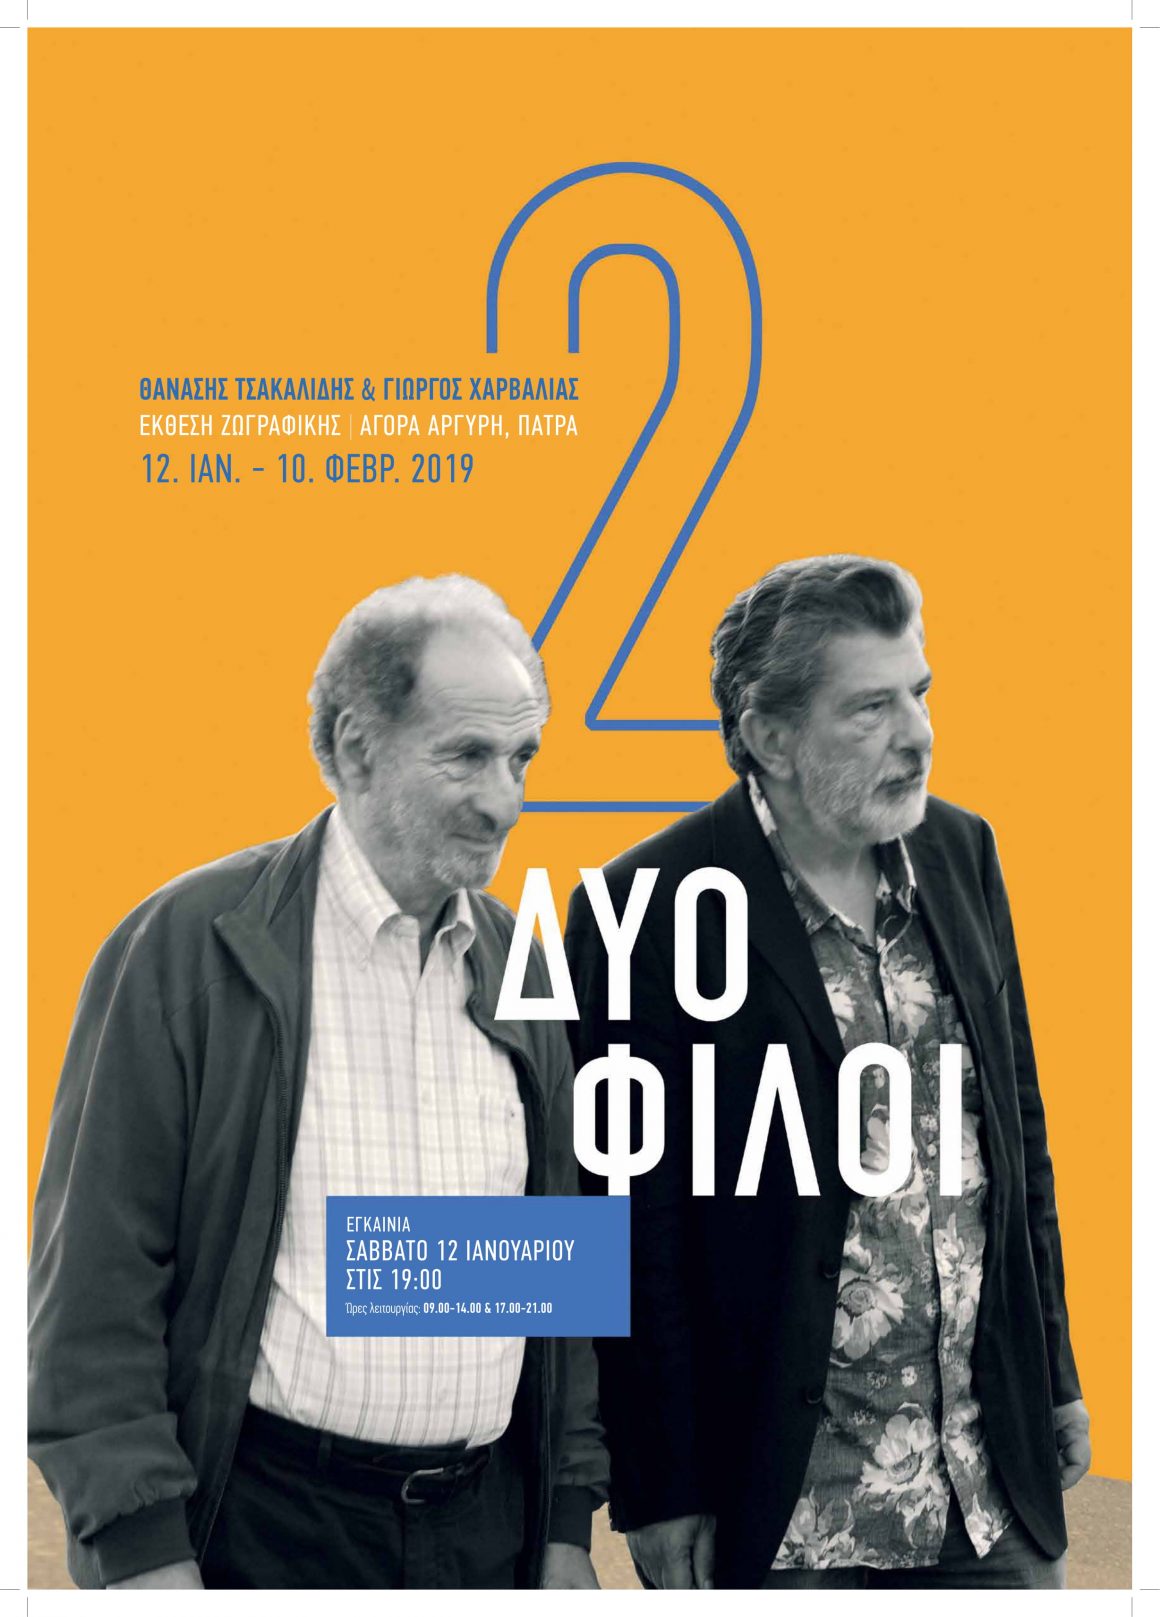 «2 φίλοι», Αθ. Τσακαλίδης, Γ. Χαρβαλιάς @ Αγορά Αργύρη, Πάτρα, 12.1-10.2.2019